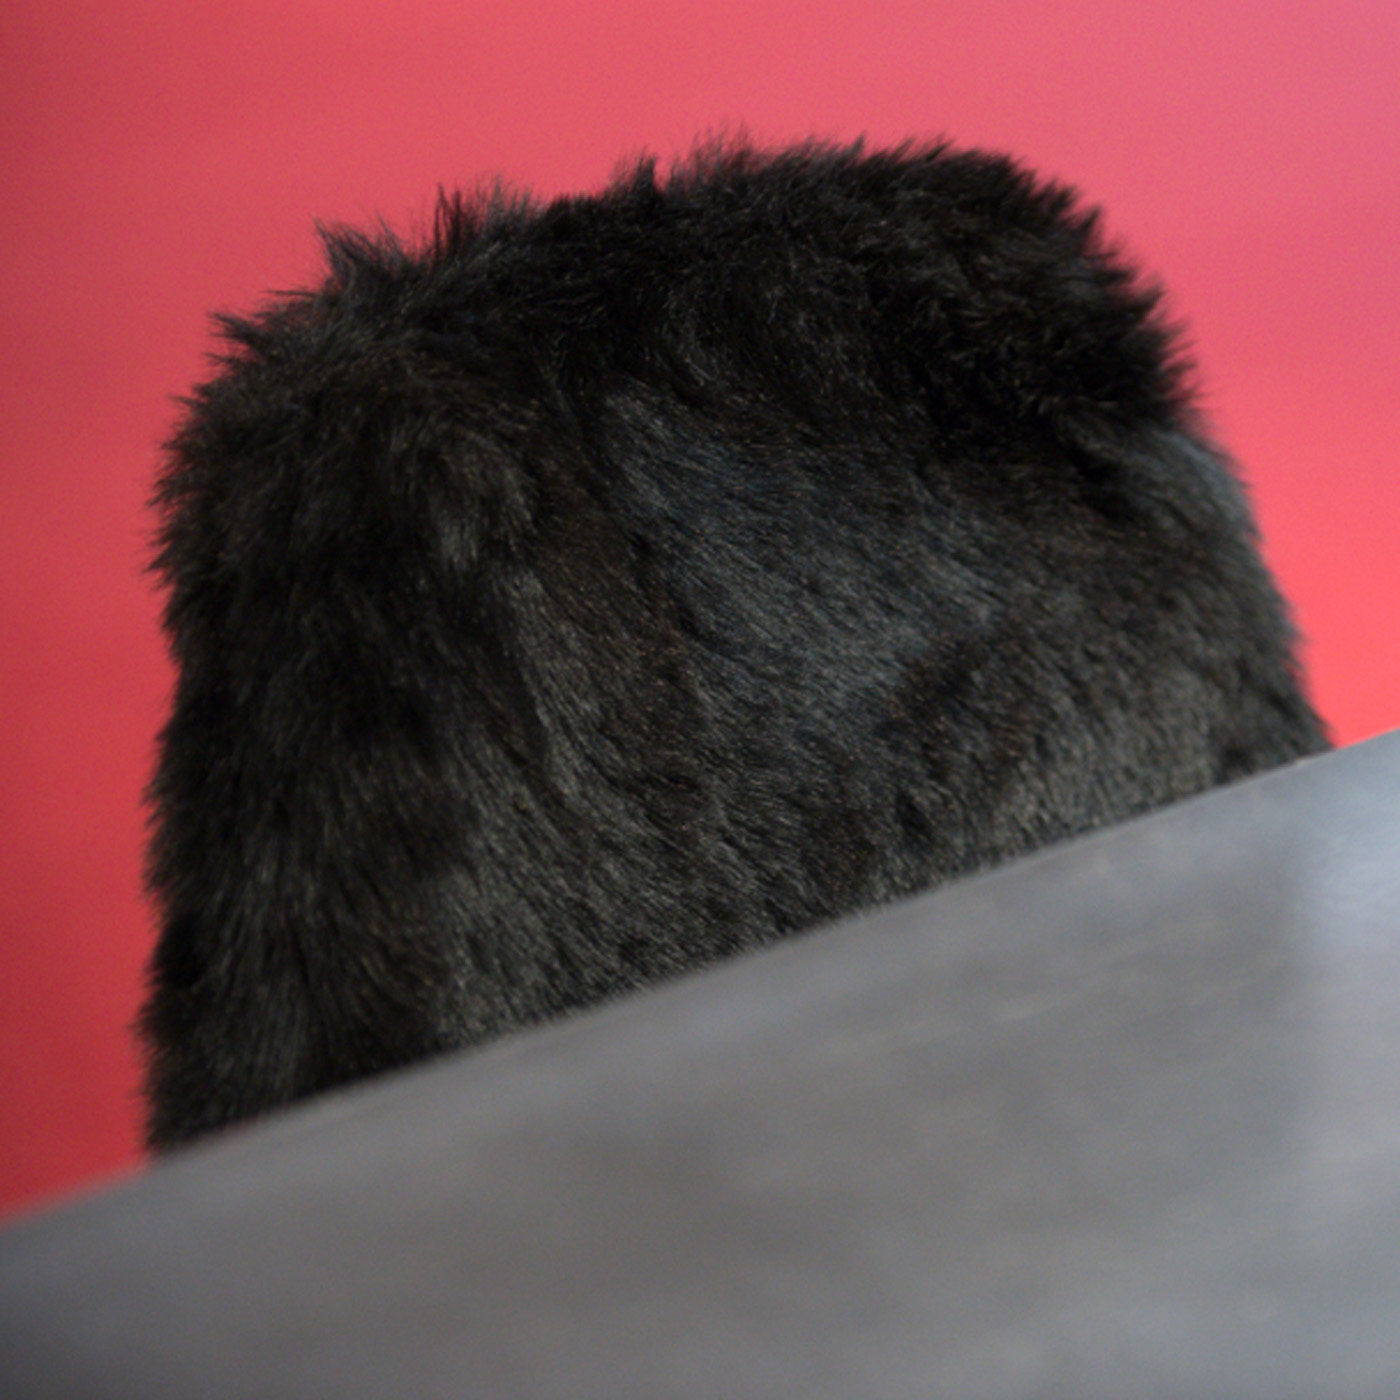 Mammamia Black Fur Chair - Alternative view 4